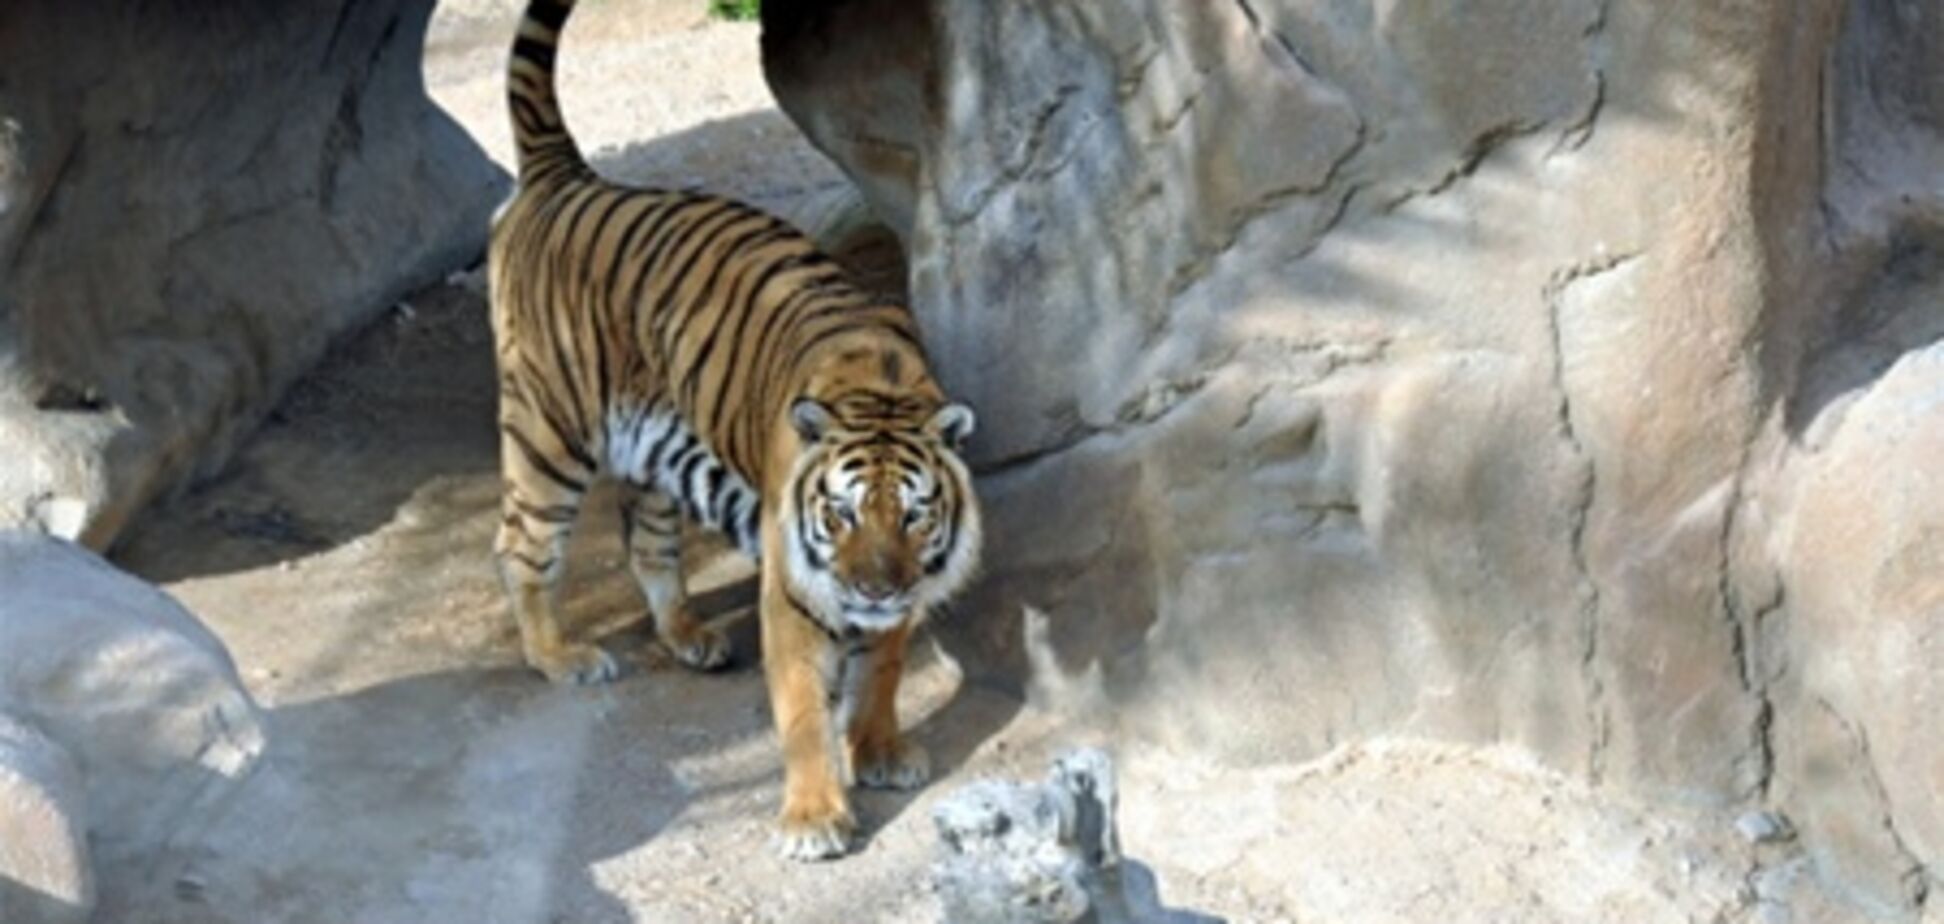 Духовное общение с тигром чуть не закончилось для туриста трагедией